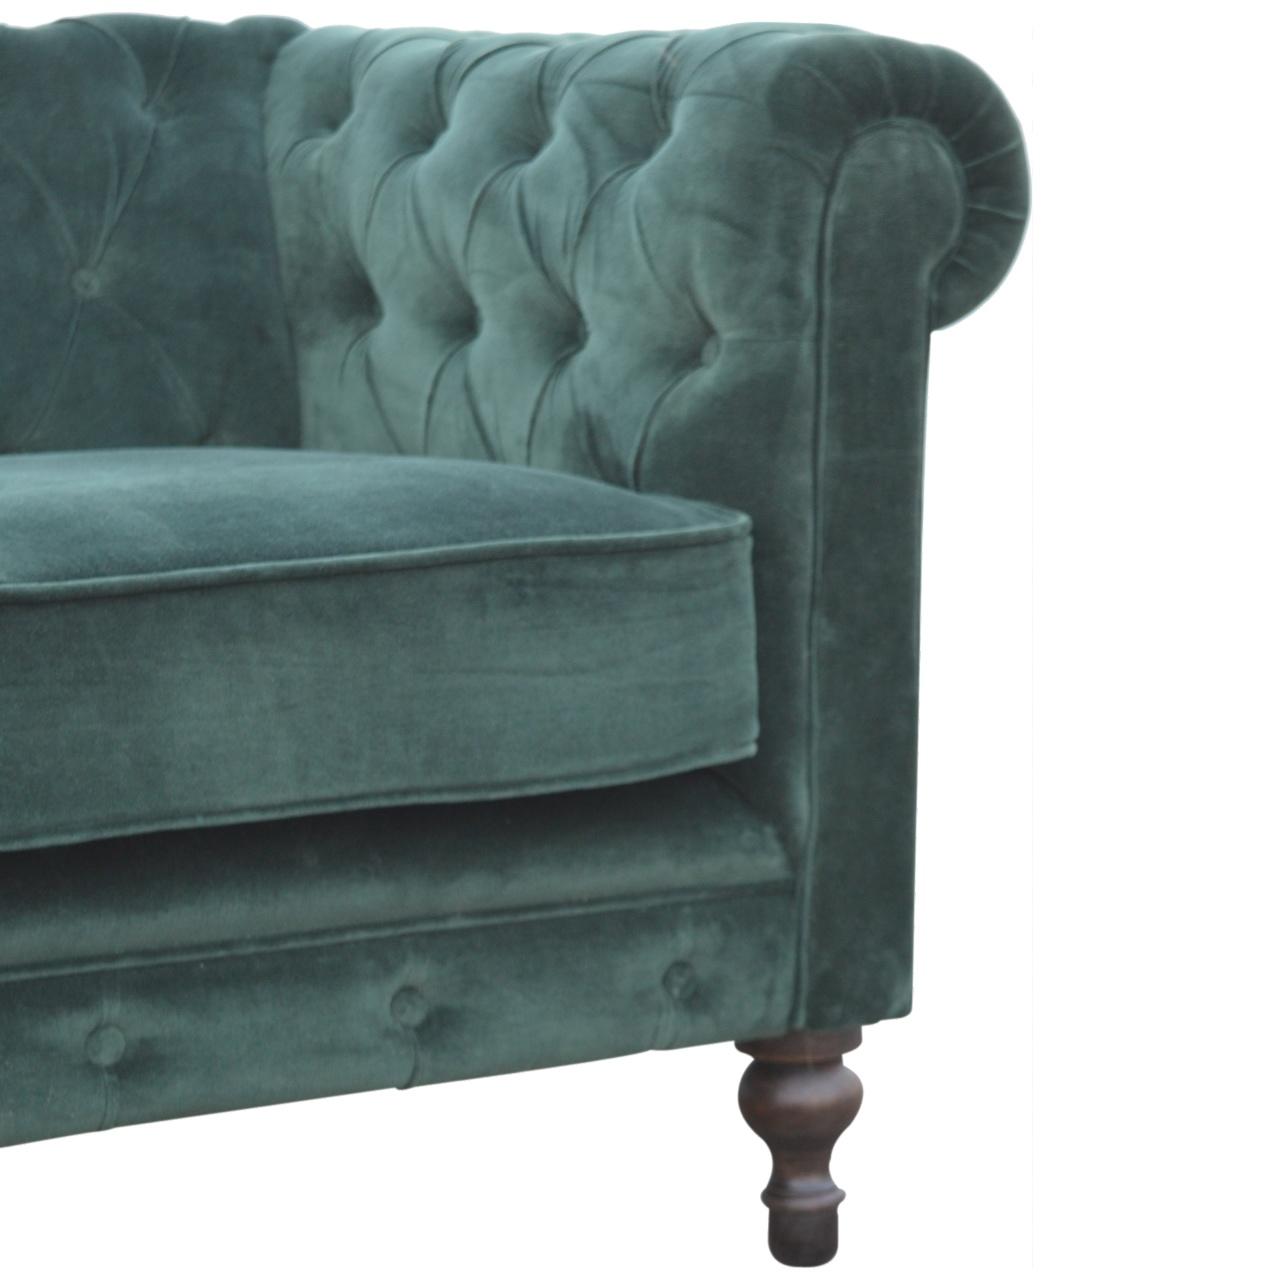 Emerald Green Velvet 2 Seater Chesterfield Sofa